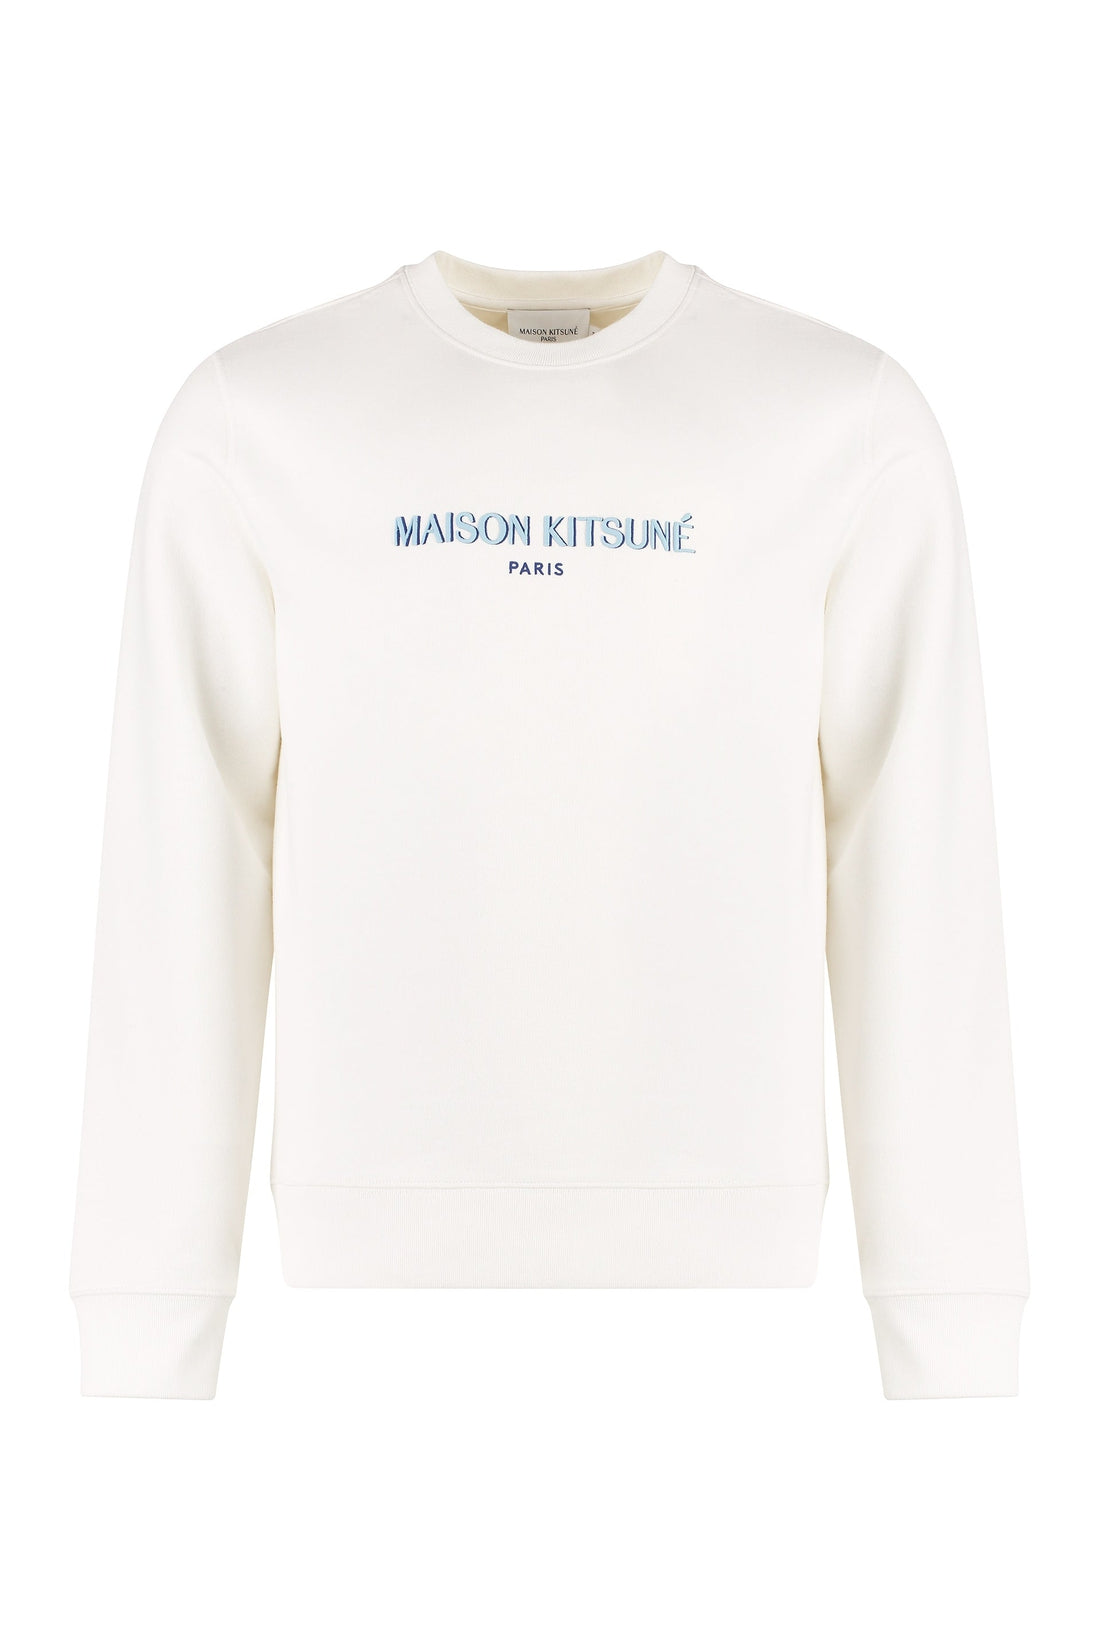 Maison Kitsuné-OUTLET-SALE-Embroidered logo crew-neck sweatshirt-ARCHIVIST